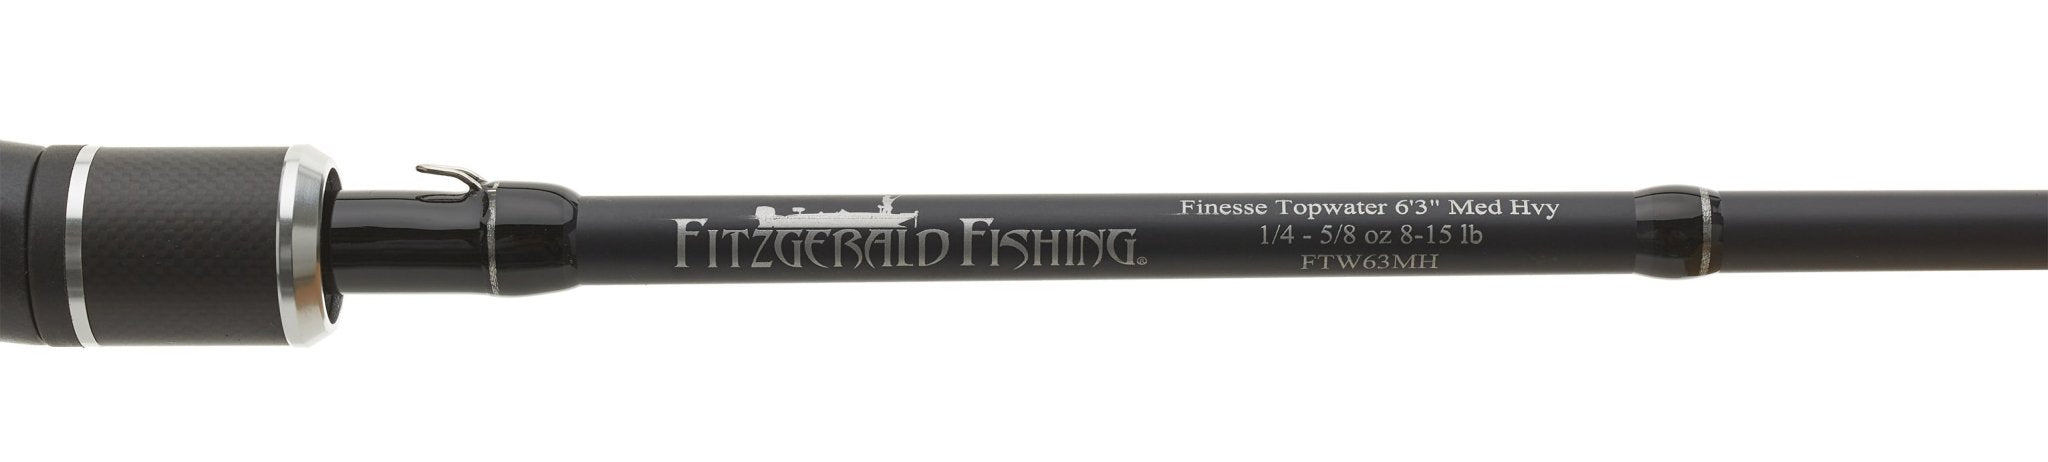 Fitzgerald Fishing Bryan Thrift Tungsten Micro Jig